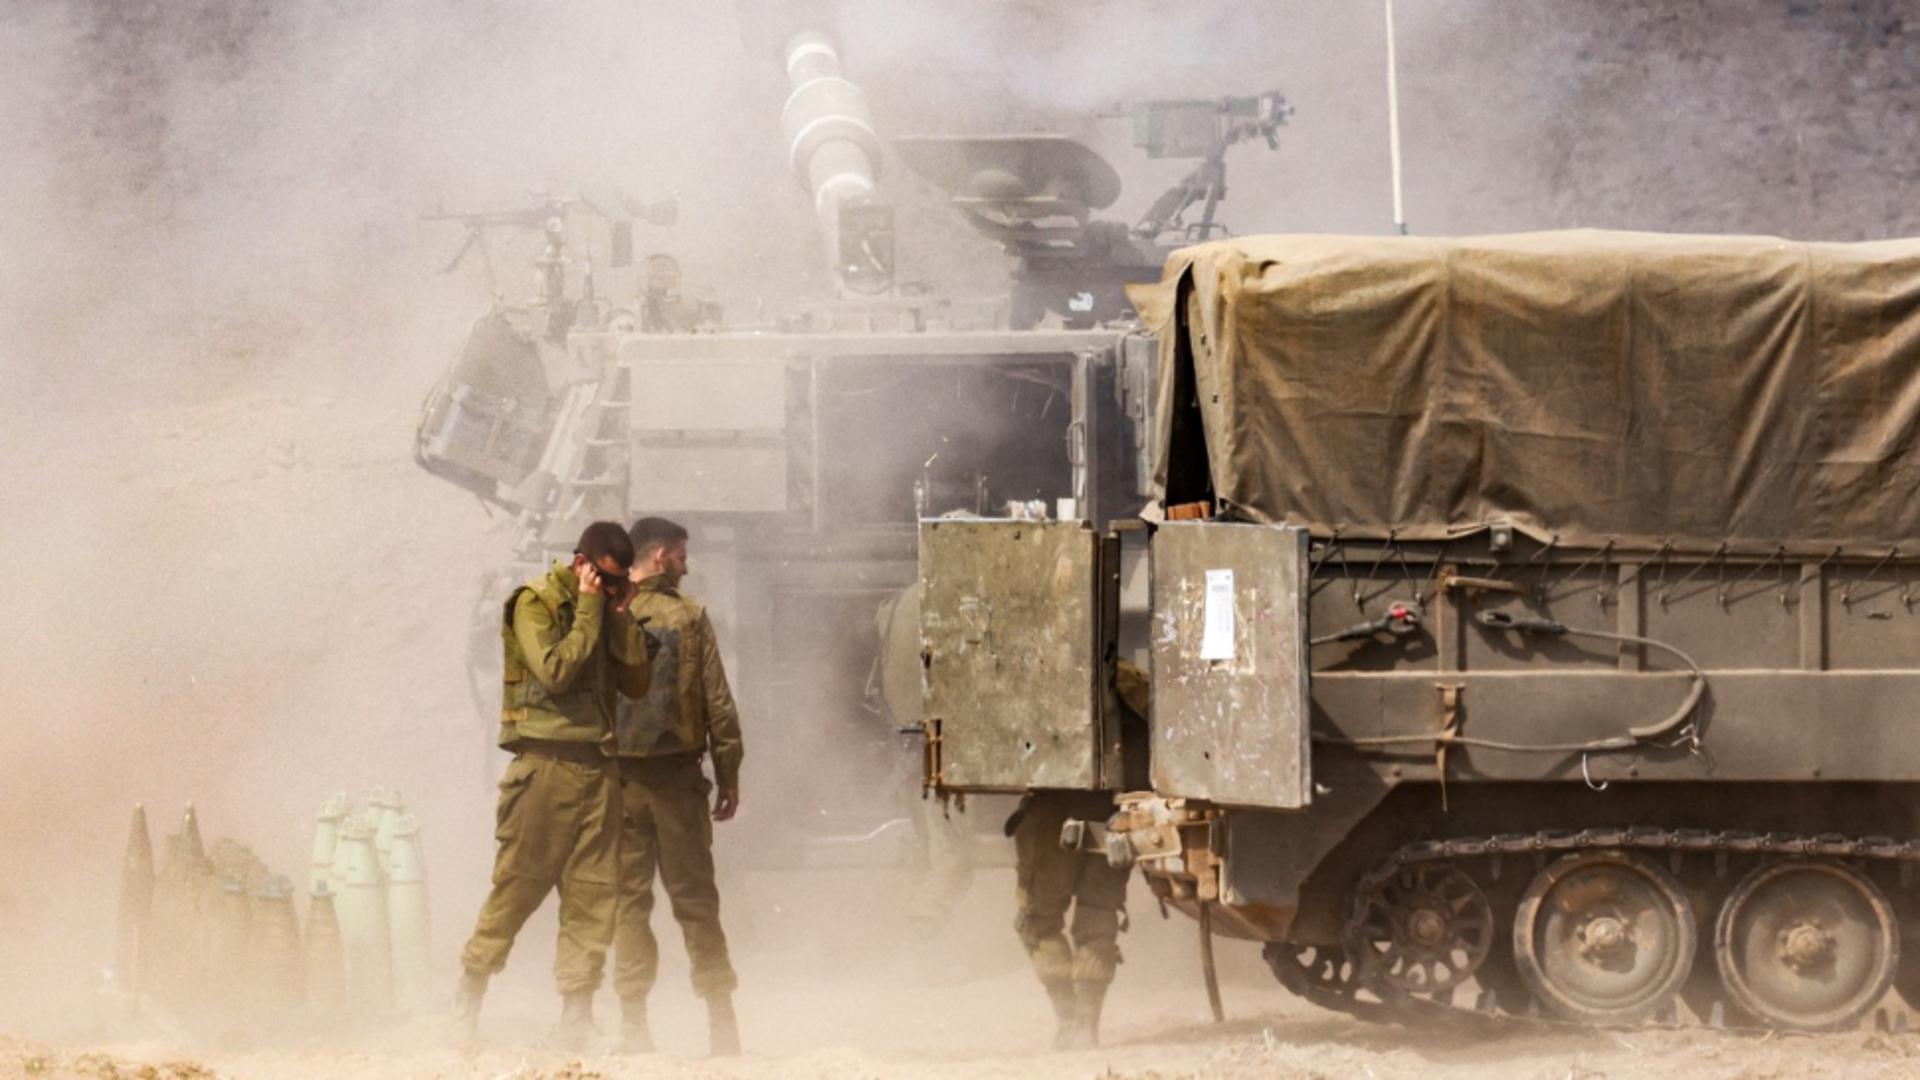 Israelul e gata să intre în Fâșia Gaza. 300.000 de soldați așteaptă semnalul să treacă granița